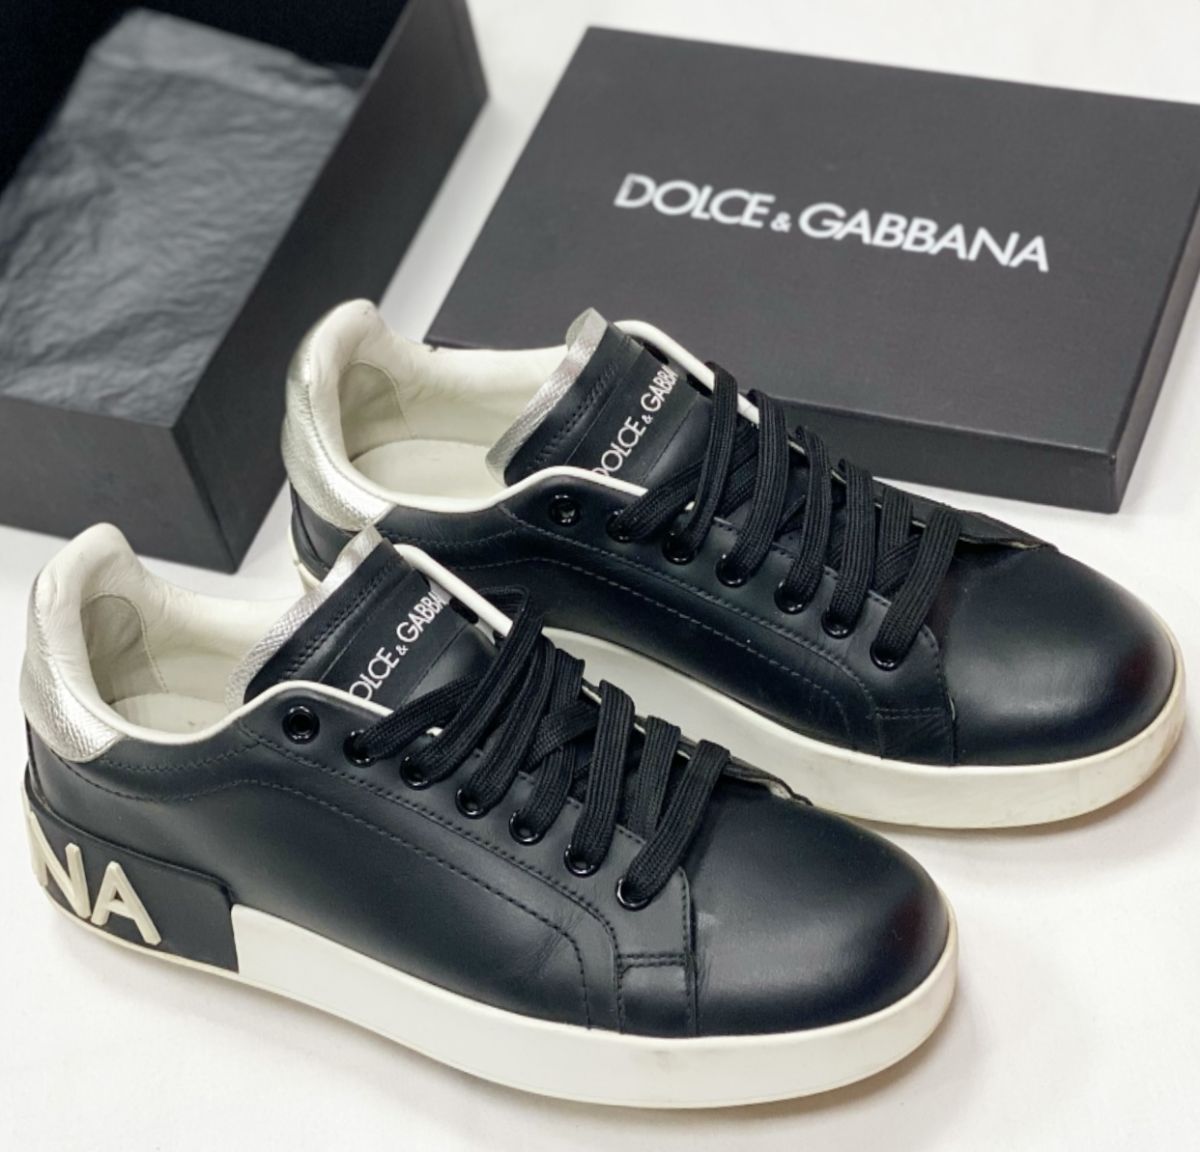 Кеды Dolce Gabbana размер 38 цена 20 000 руб 